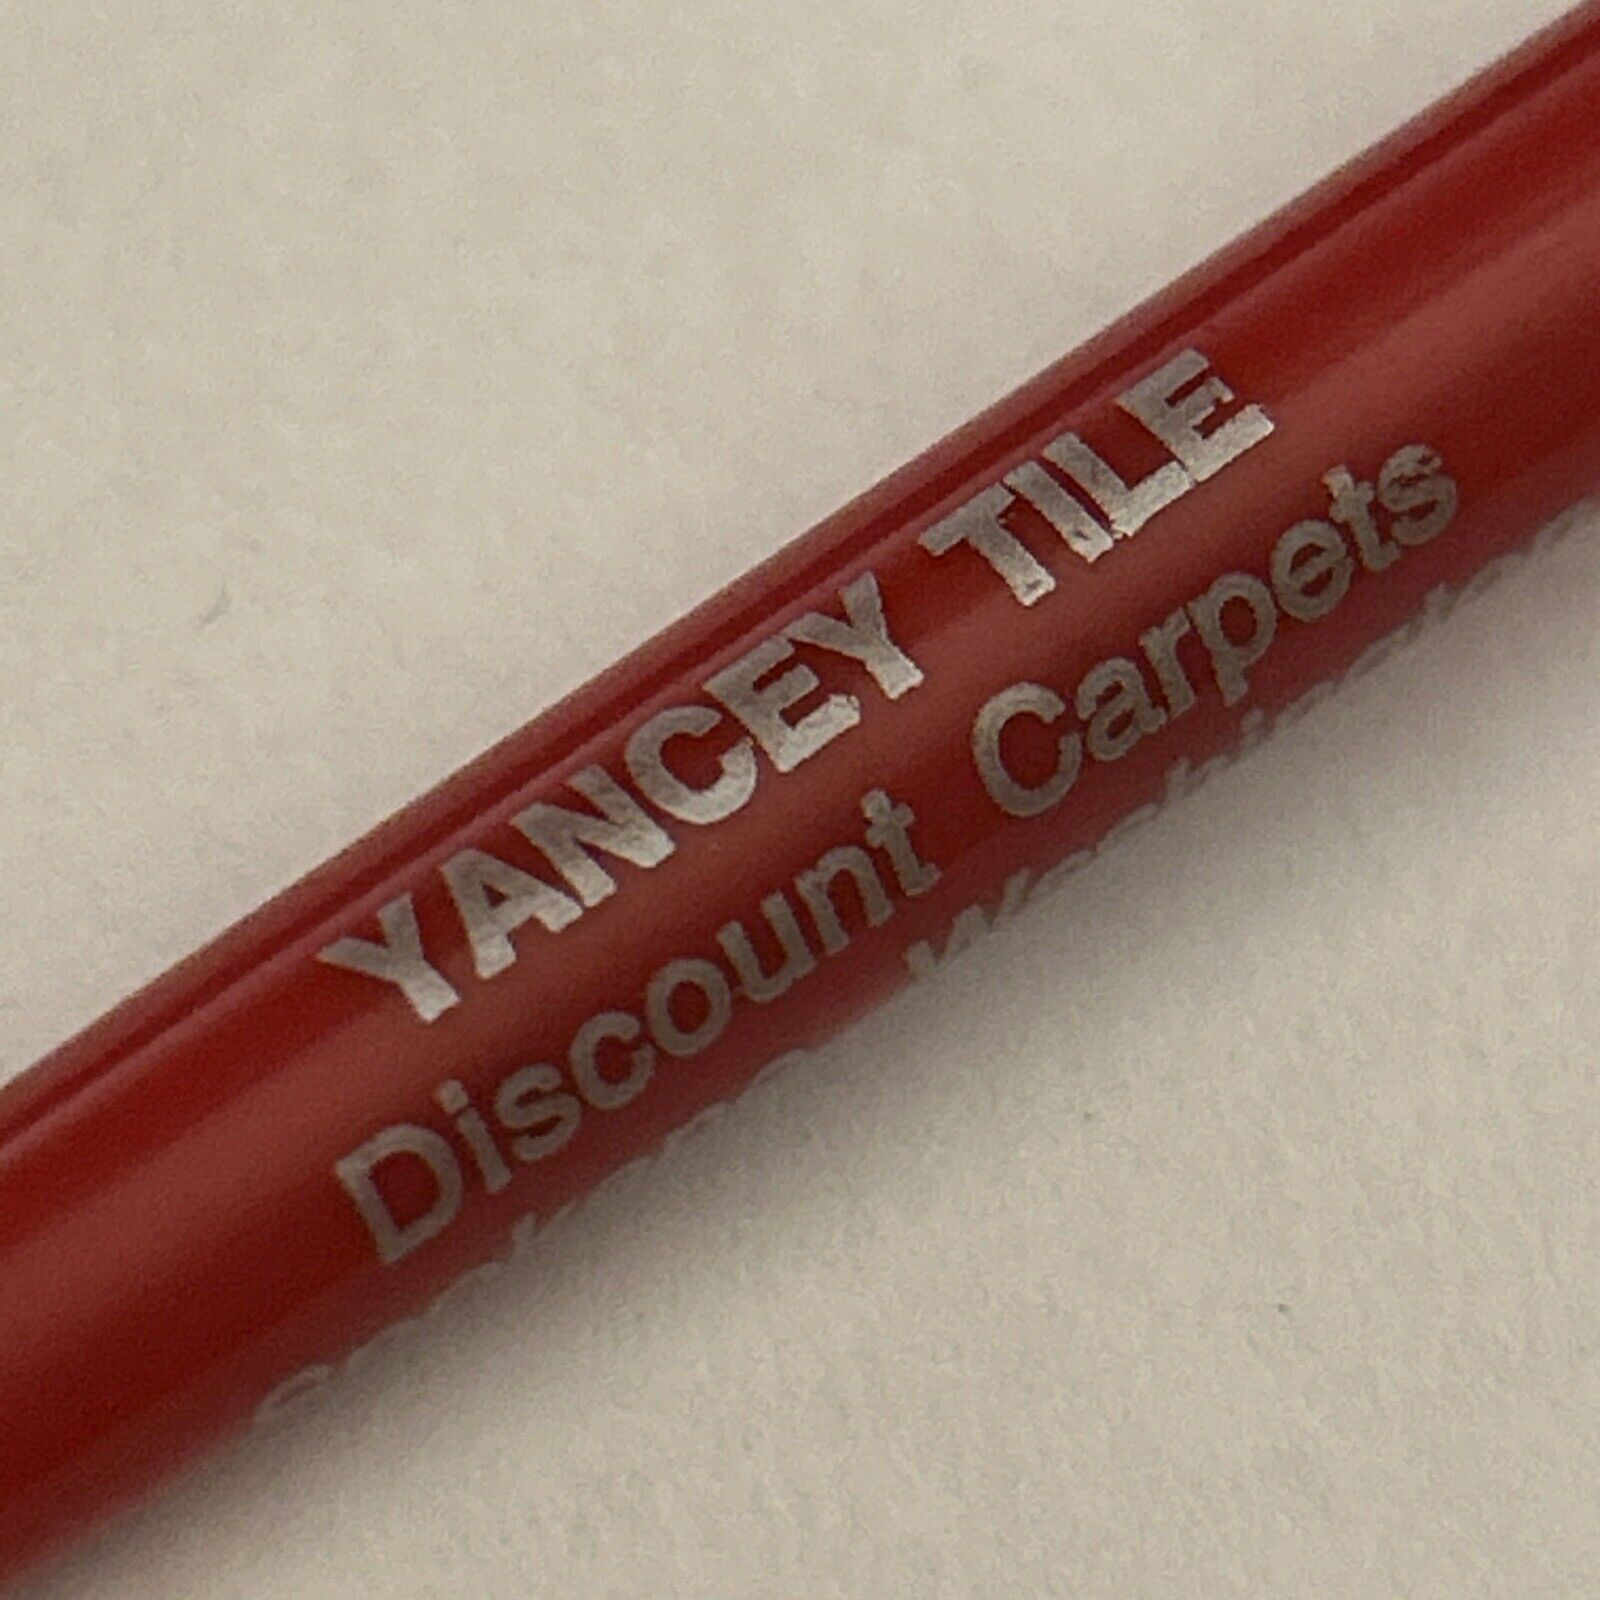 VTG Ballpoint Pen Yancey Tile Discount Carpets Spokane Washington